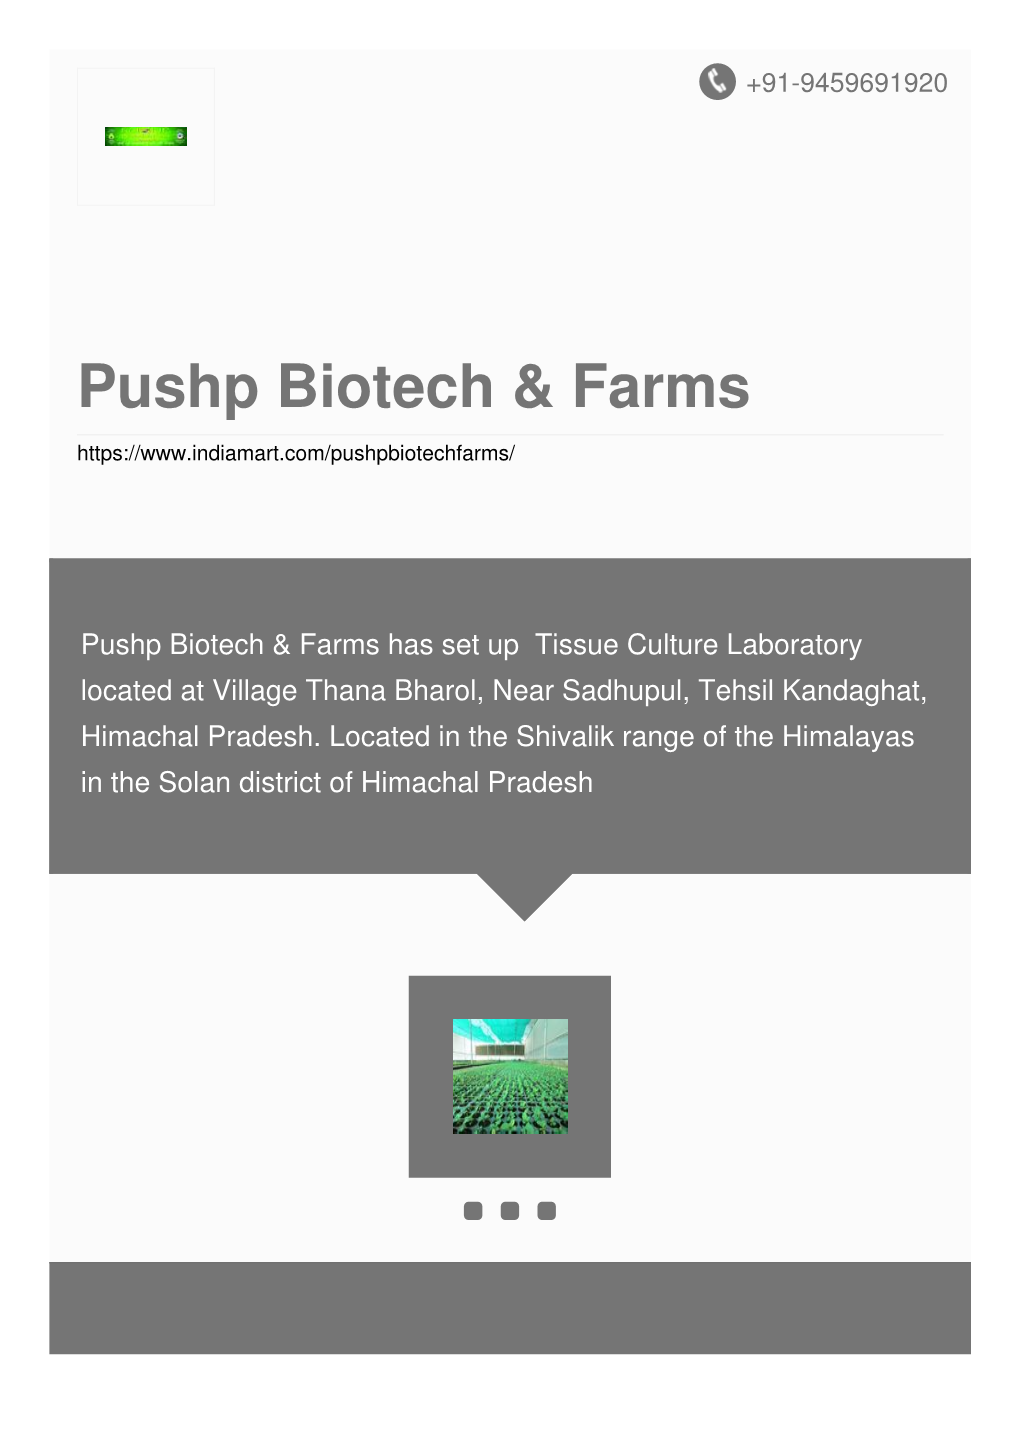 Pushp Biotech & Farms